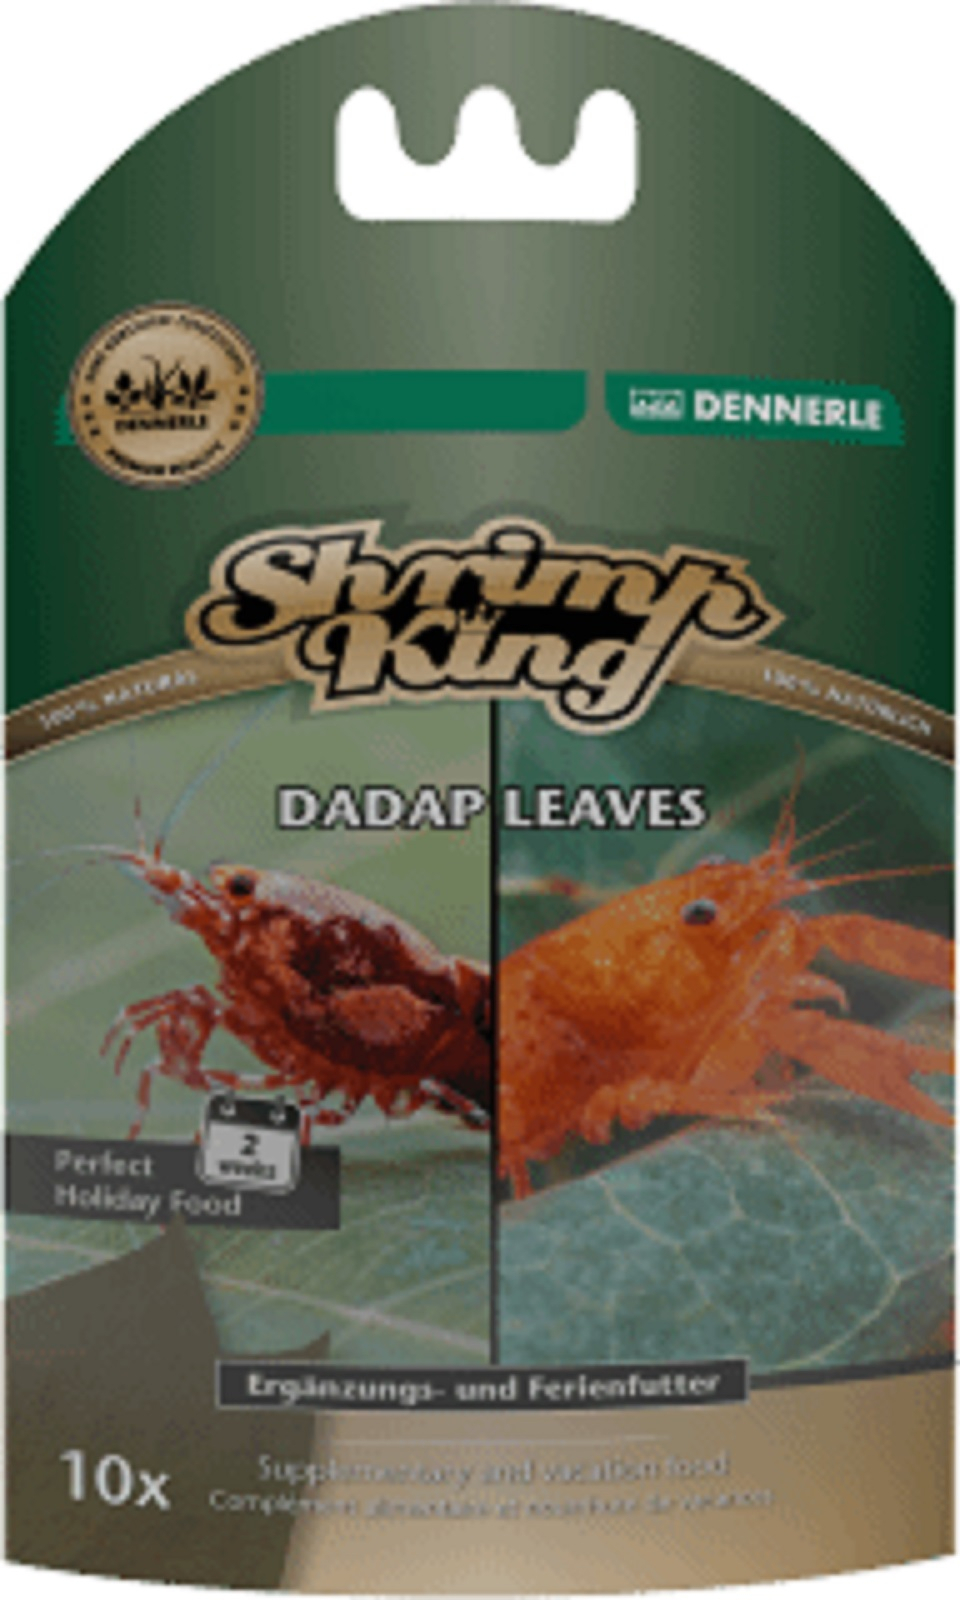 Dennerle Shrimp King Dadap Leaves Alimento para camarones y cangrejos